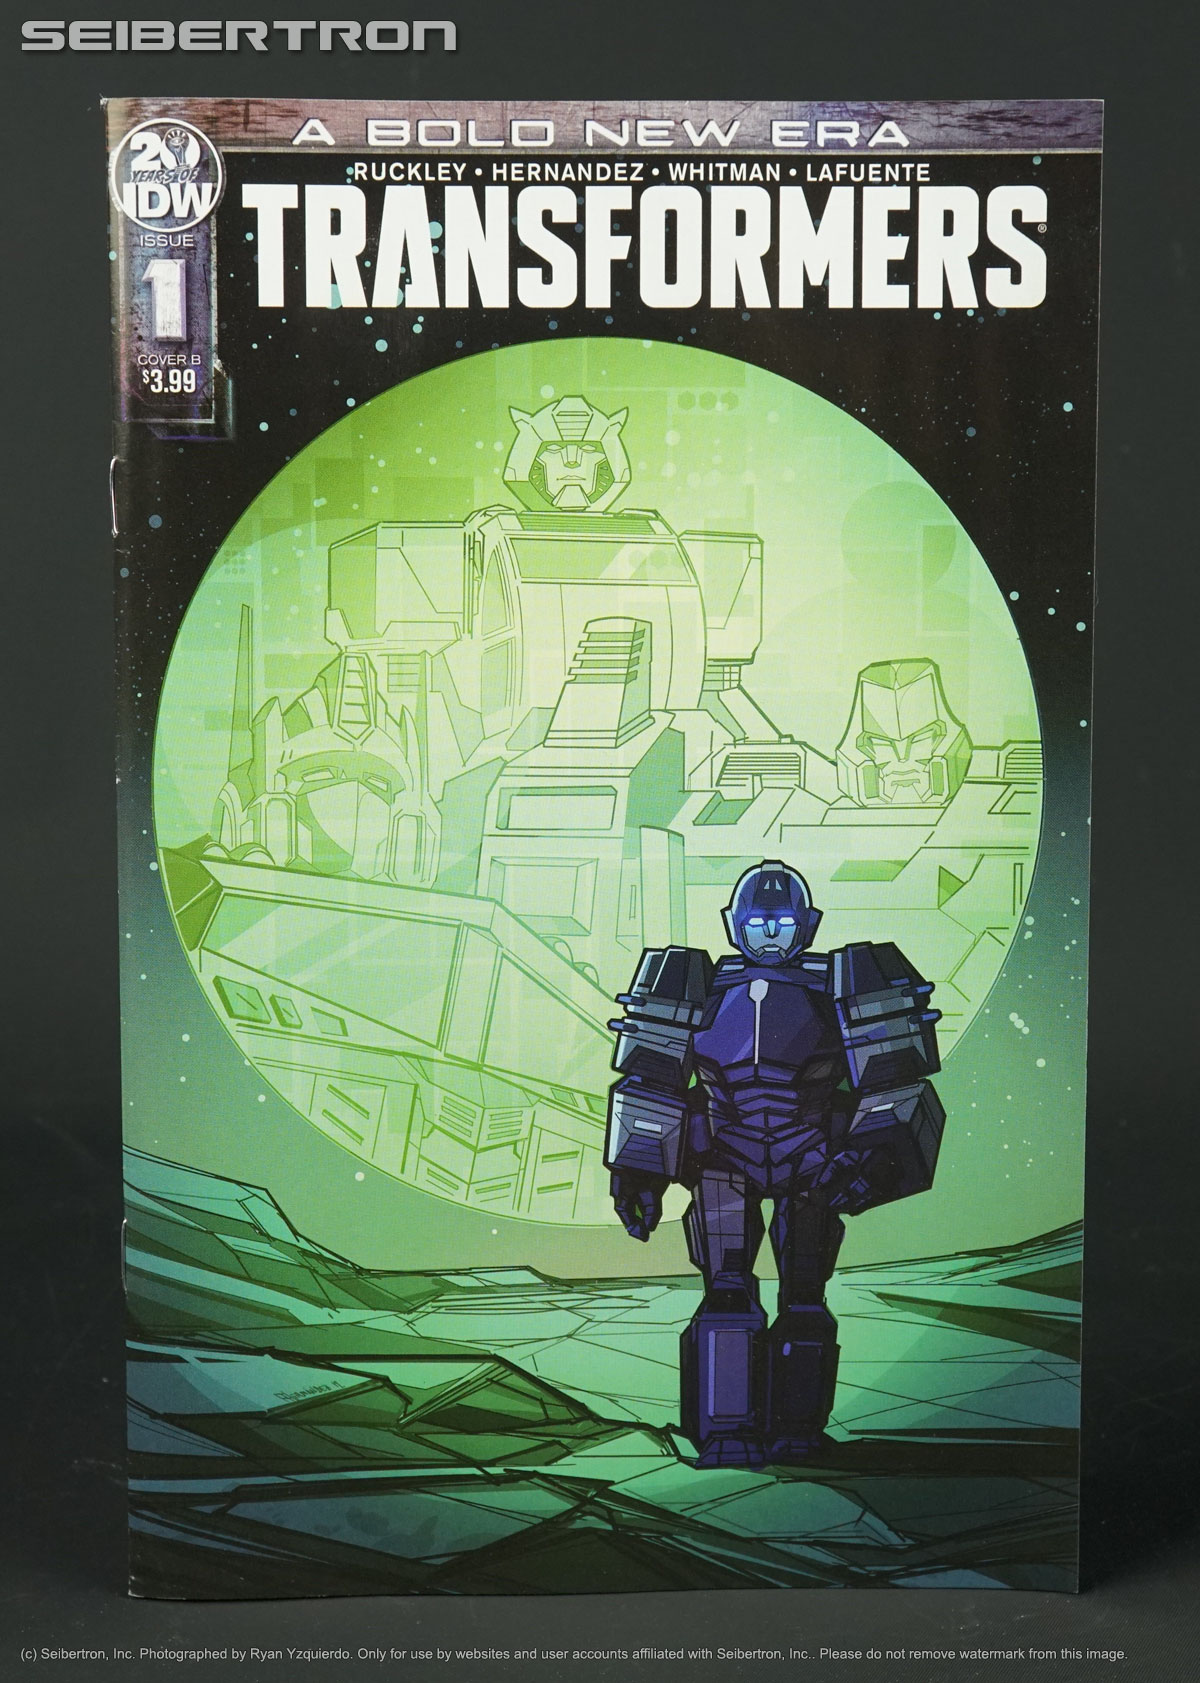 TRANSFORMERS #1 Cover B (1st Print) IDW Comics 2019 BOLD NEW ERA SIEGE 1B